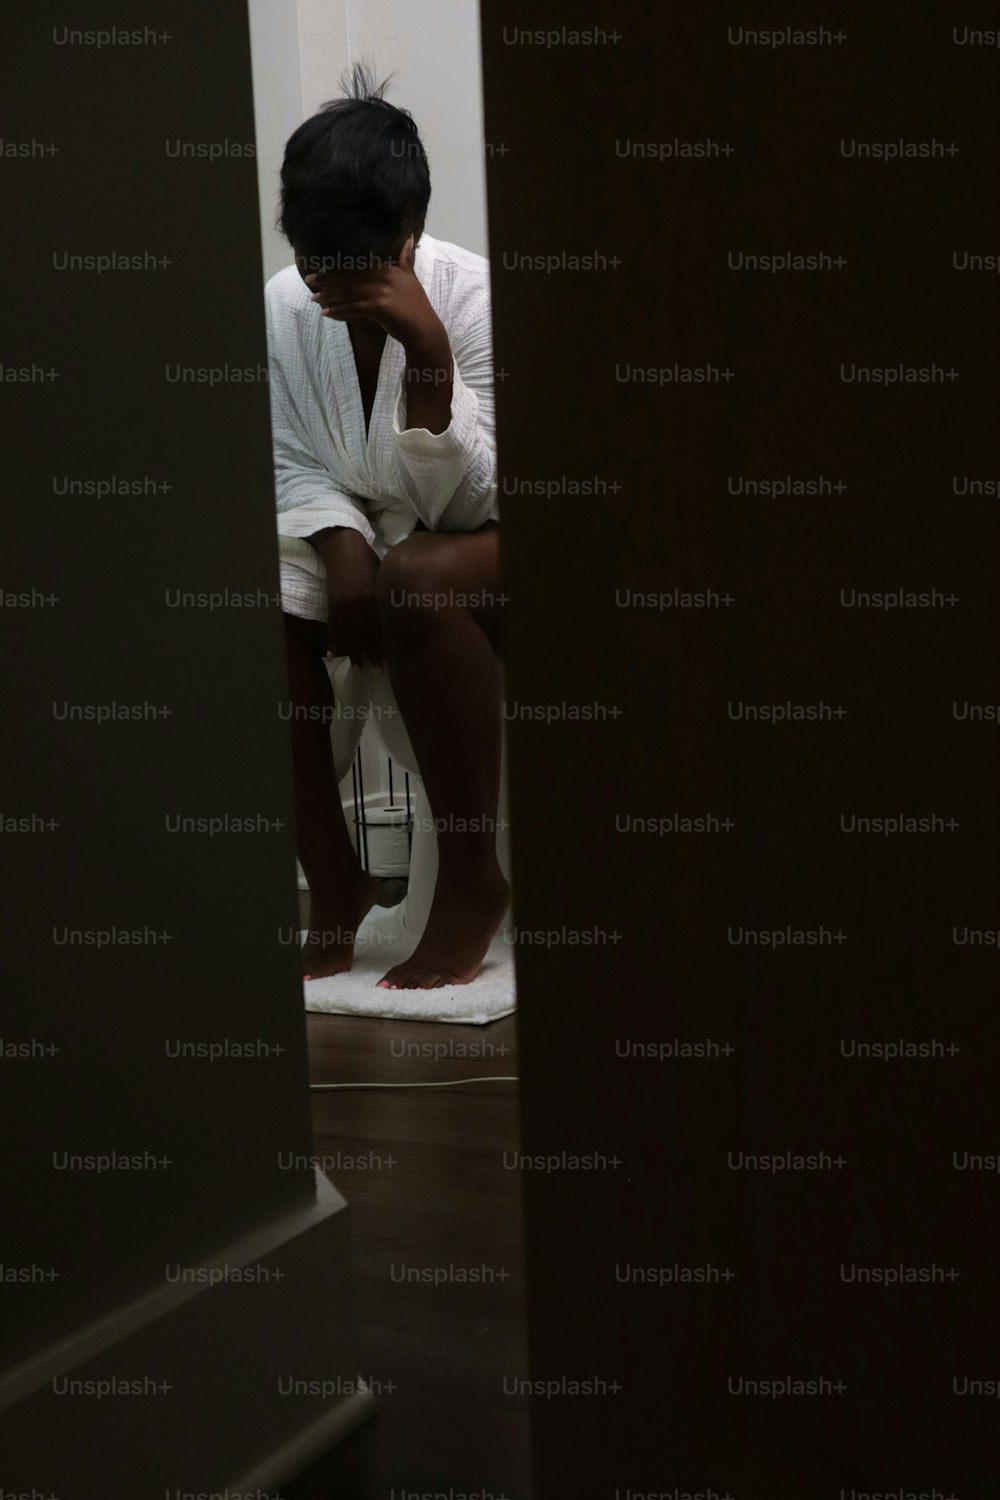 eine Person, die auf einer Toilette in einem Raum sitzt